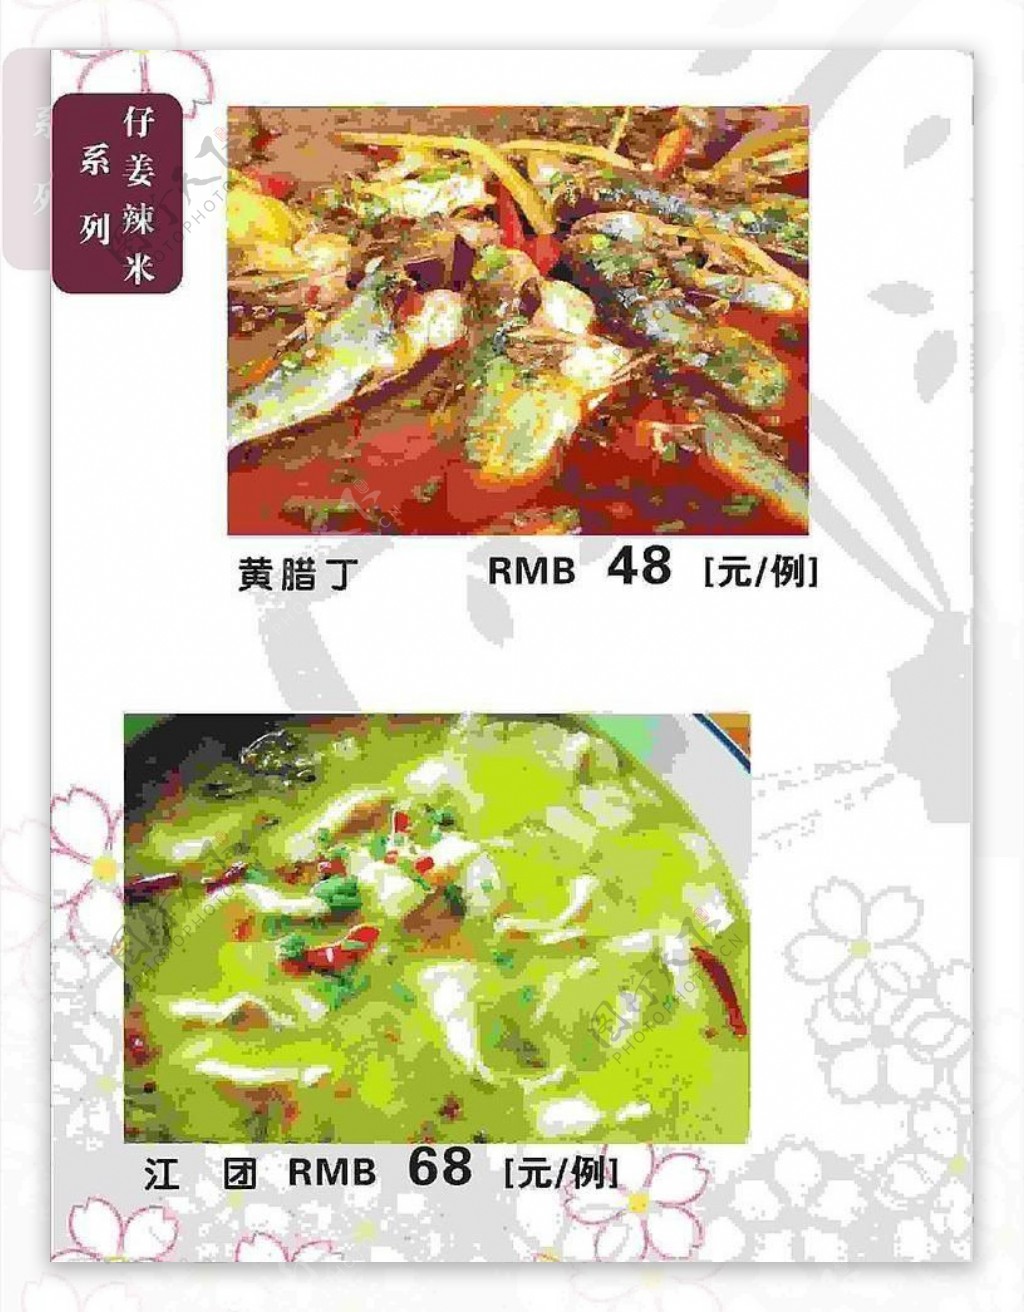 仔姜辣米系列菜谱菜单图片